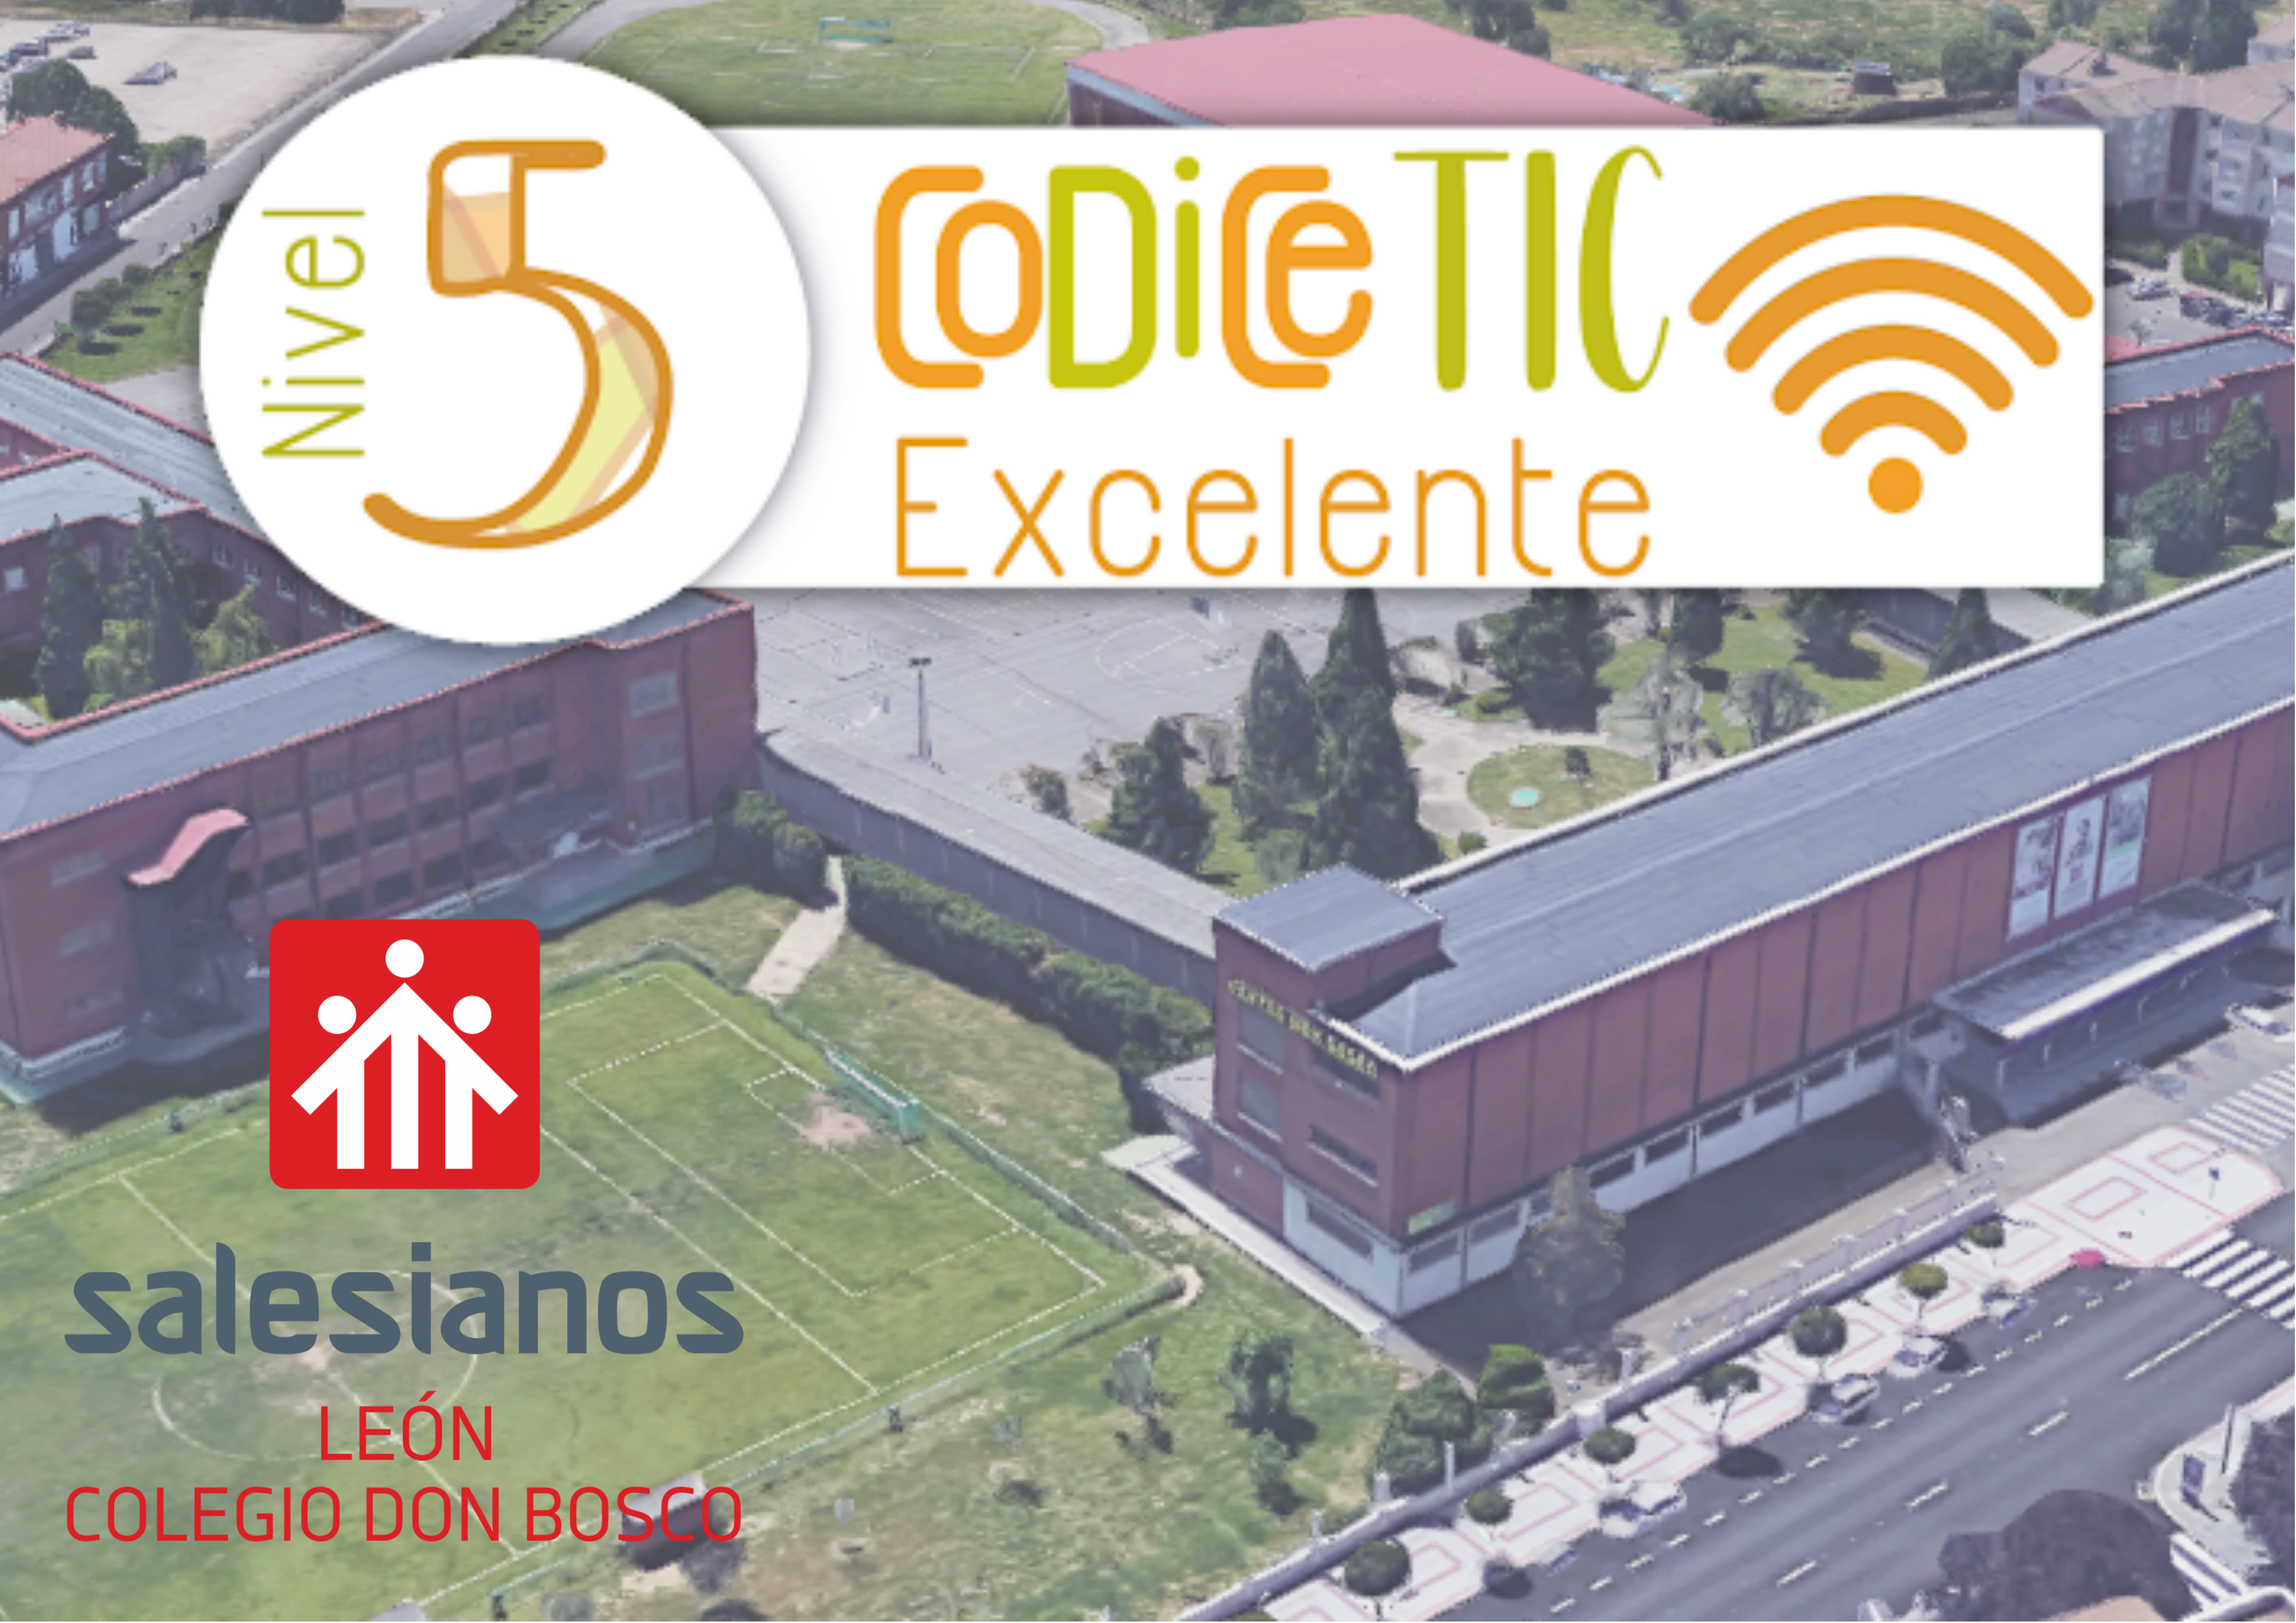 El Centro “Don Bosco León” certificado con el nivel de excelencia de CoDice TIC